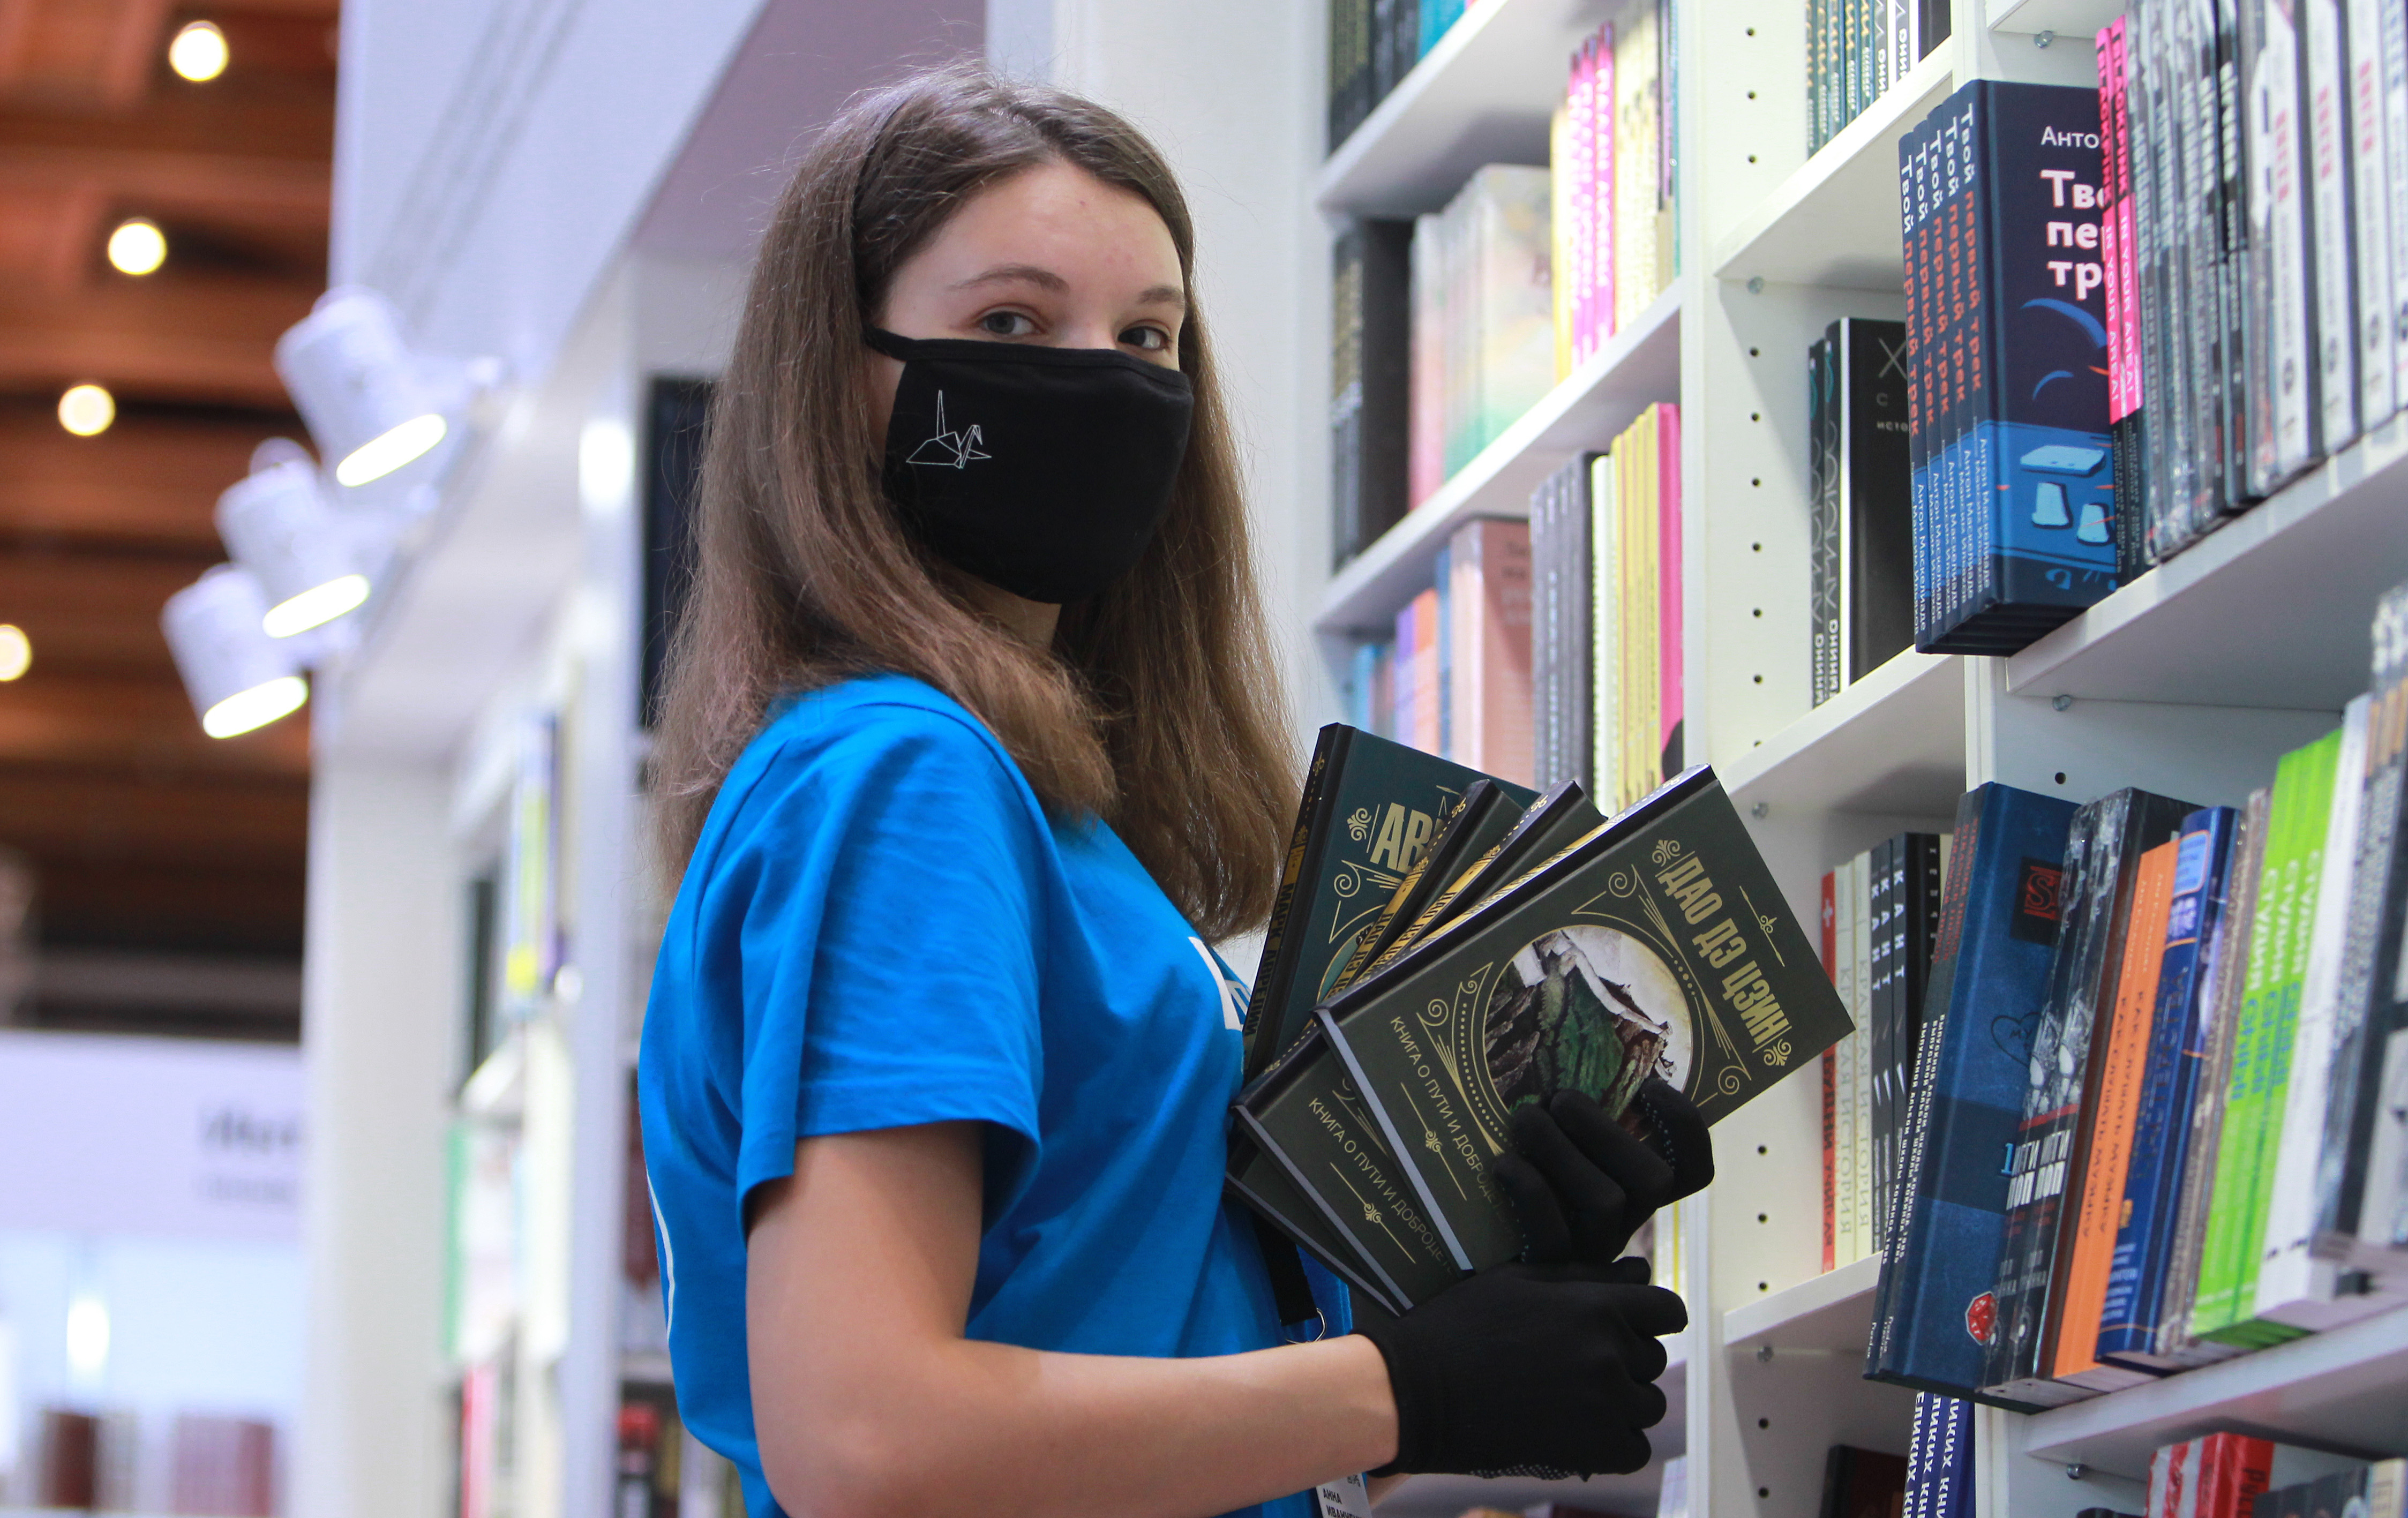 Эпидемиологическая безопасность в городе обеспечивается использованием масок и перчаток. Фото: Наталия Нечаева, «Вечерняя Москва»